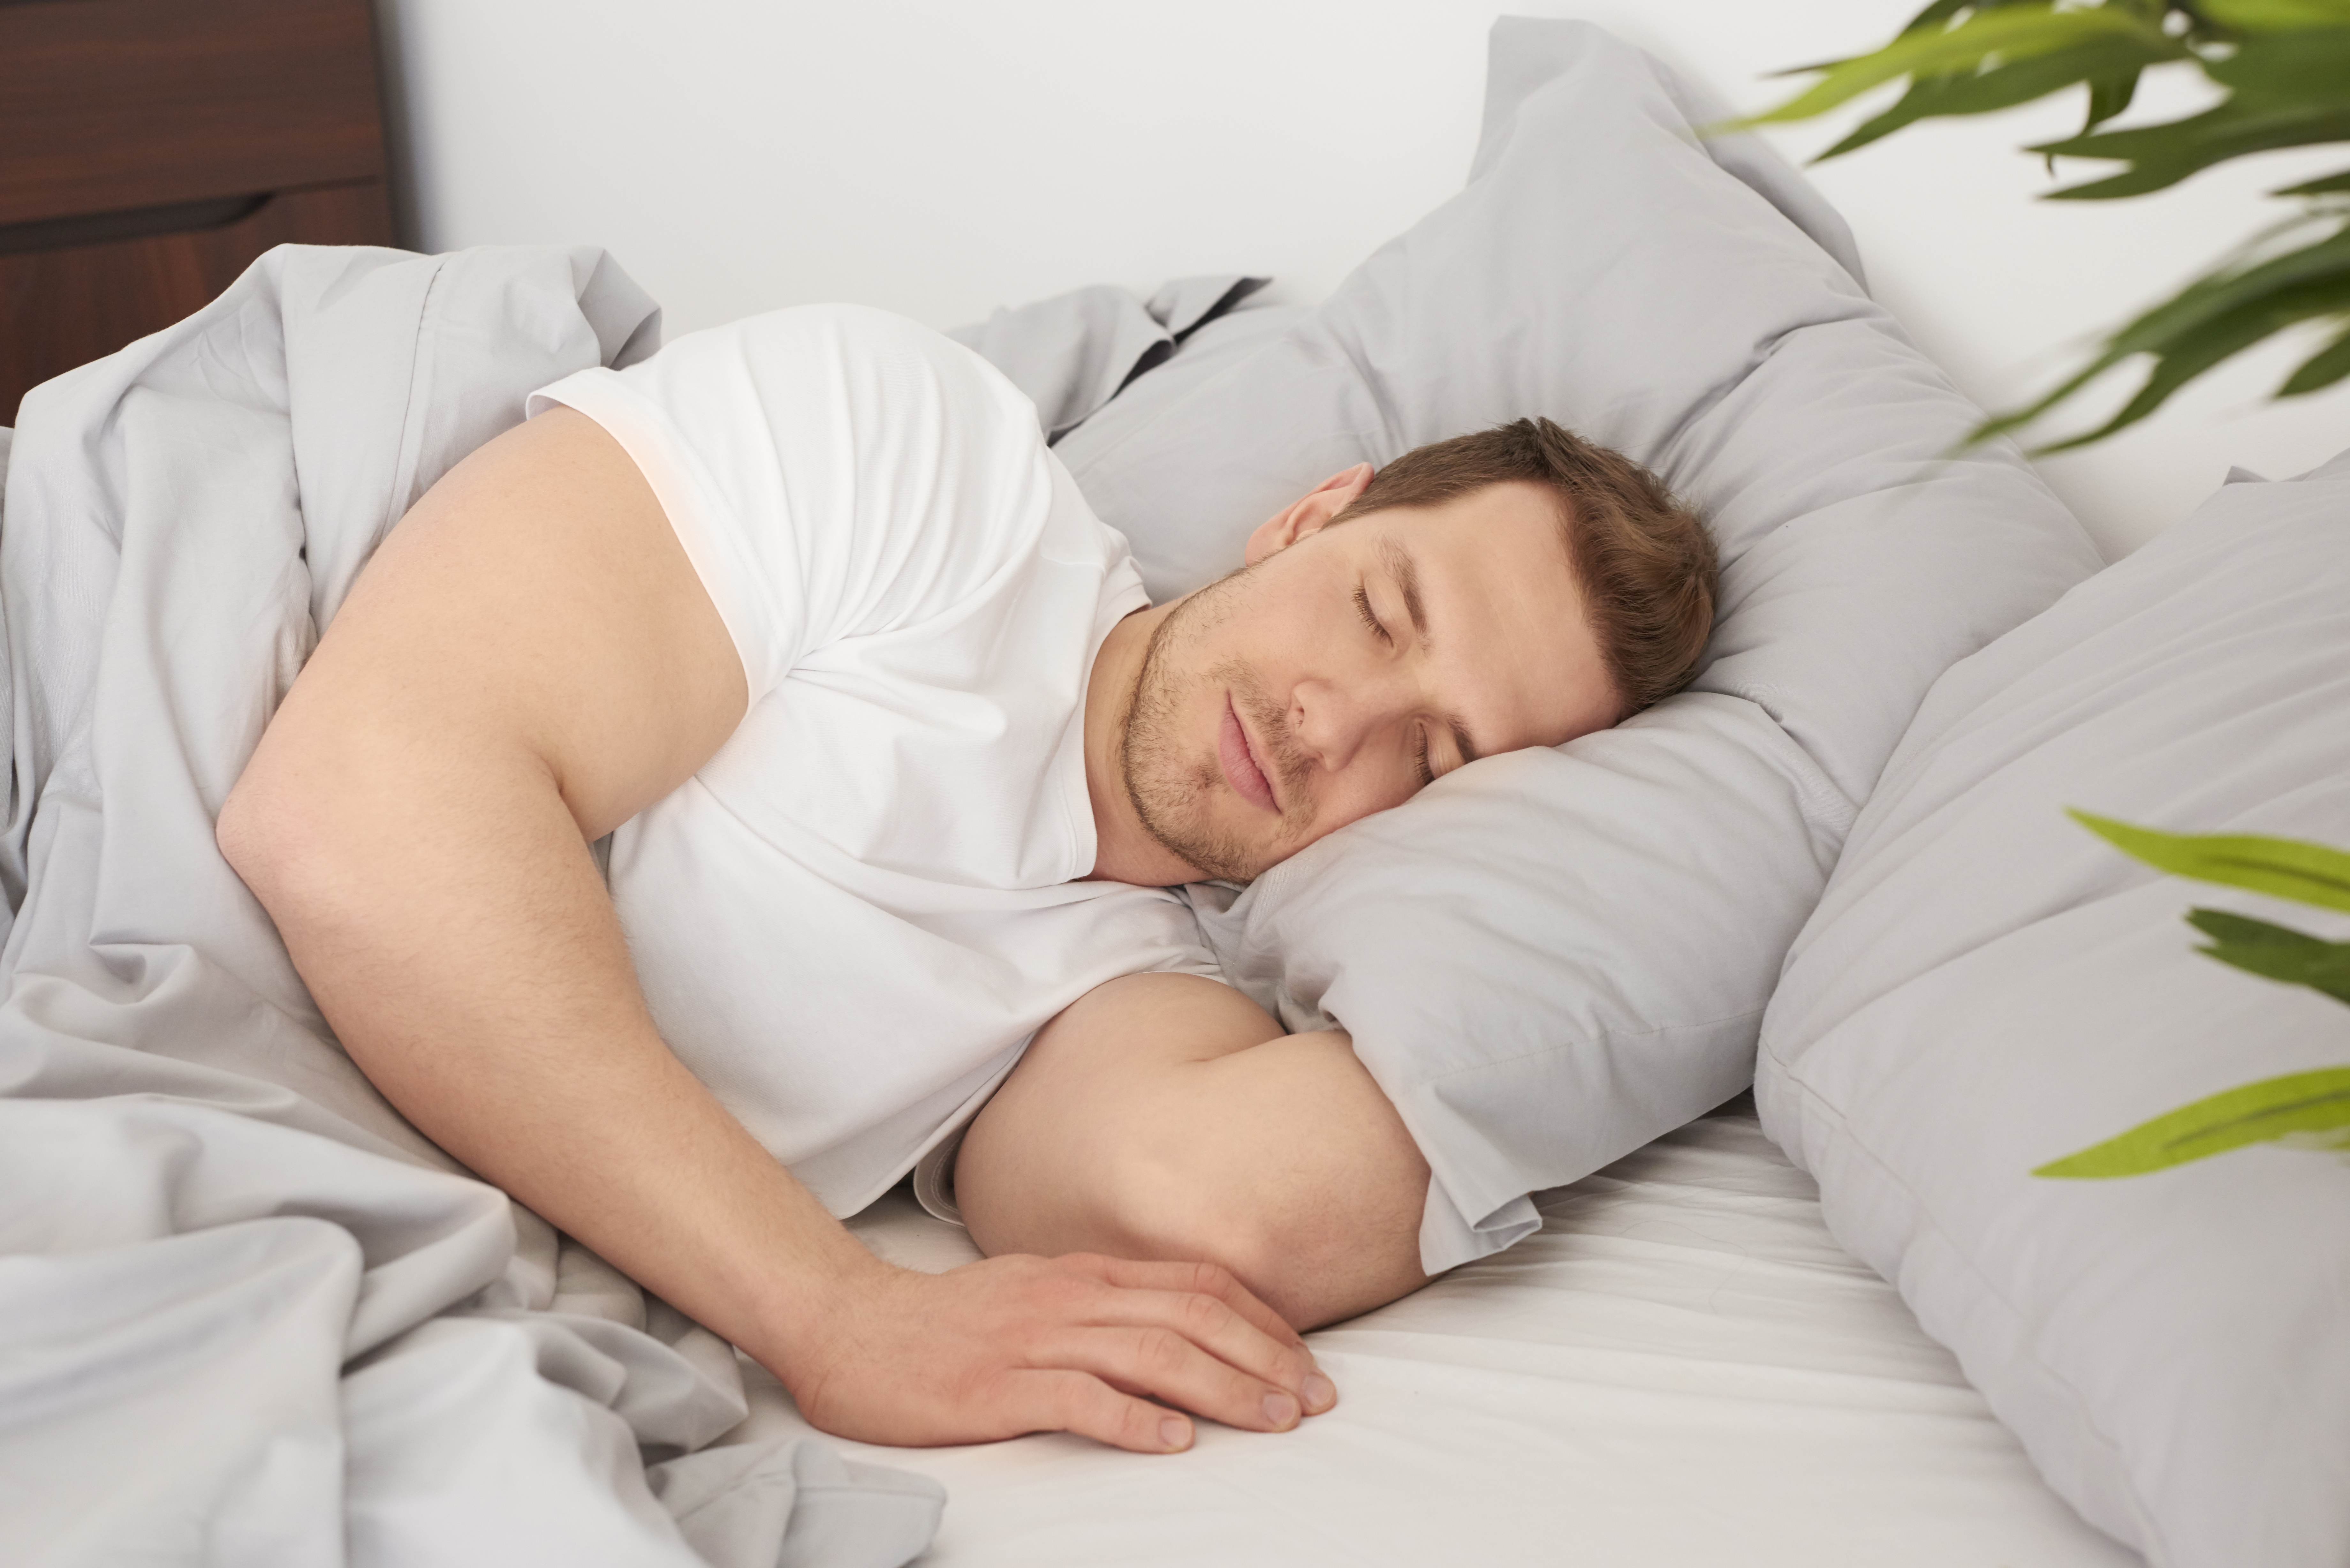 Dormir mal y no tener momentos para desconectar son negativos para el cerebro. Es fundamental un sueño reparador